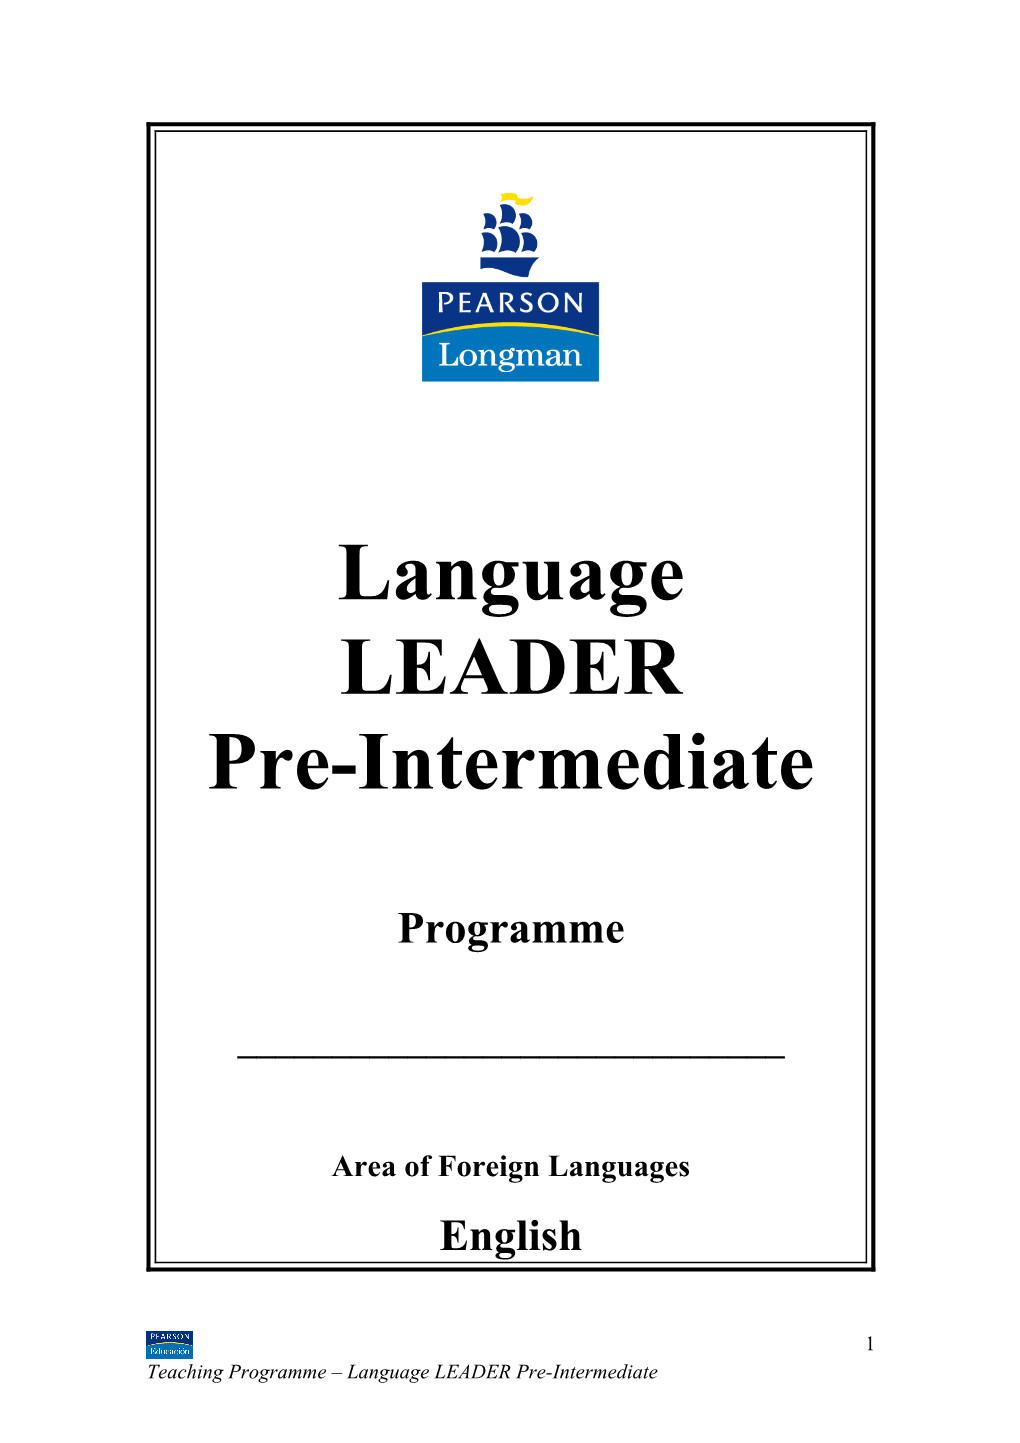 Language LEADER Teaching Programme